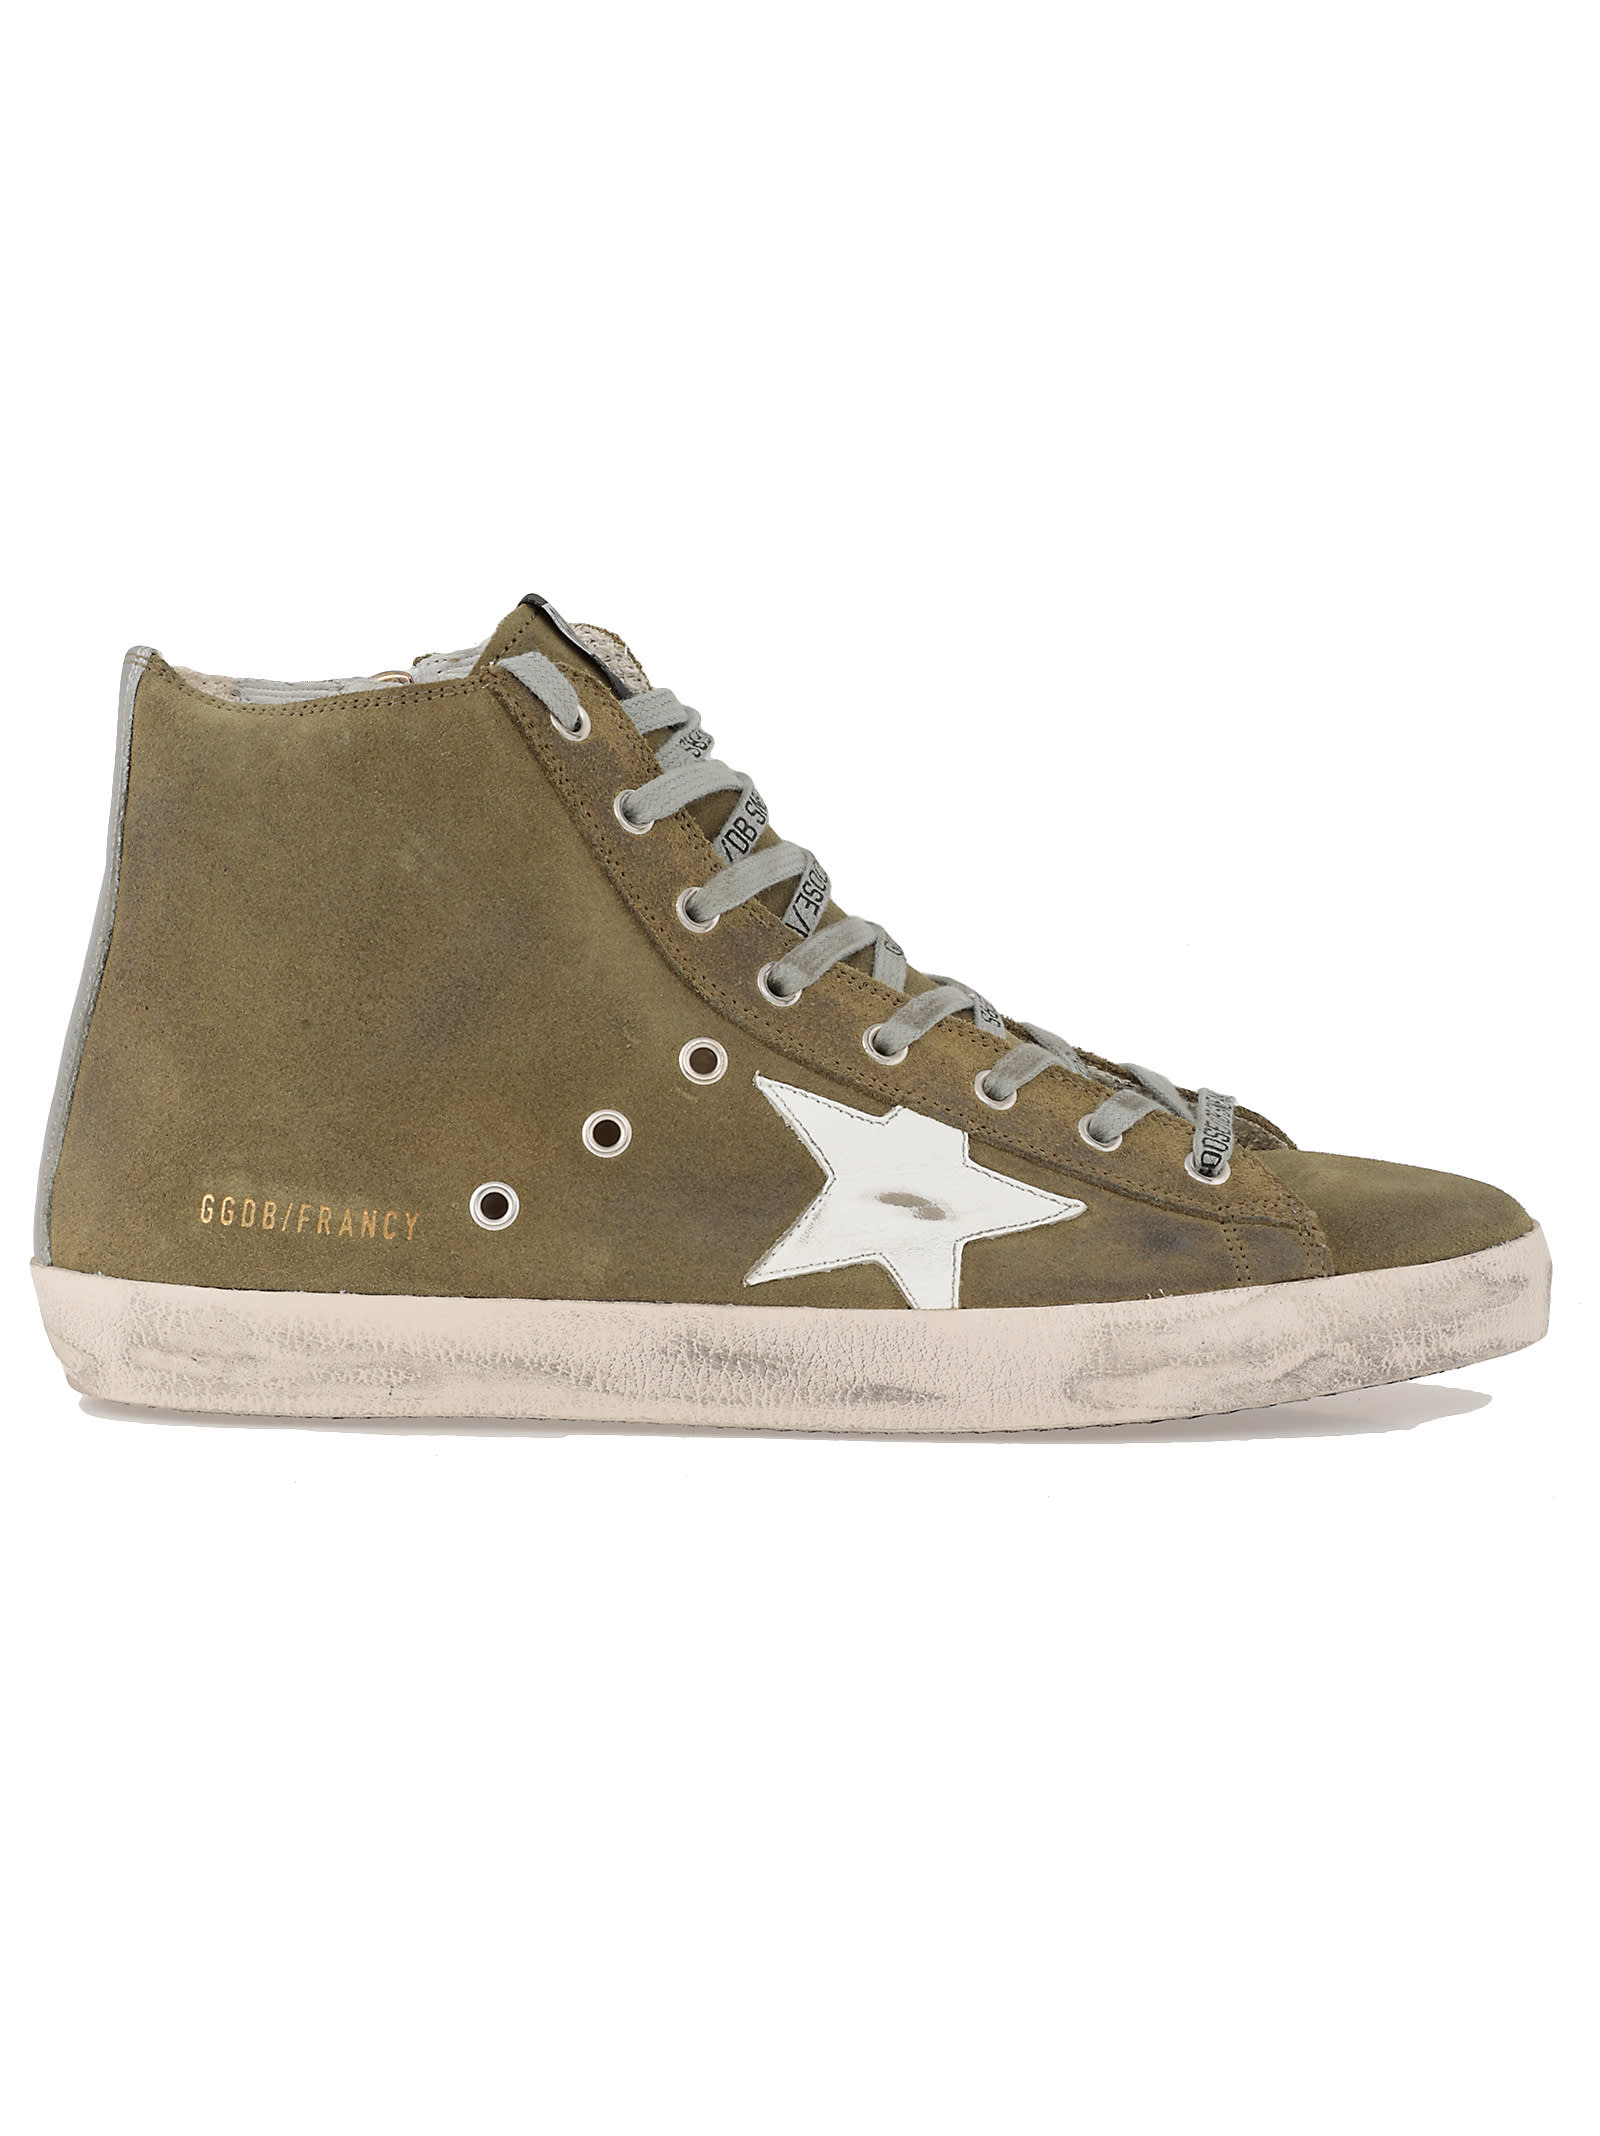 Golden Goose Golden Goose Francy Sneaker - MILITARY GREEN-WHITE STAR ...